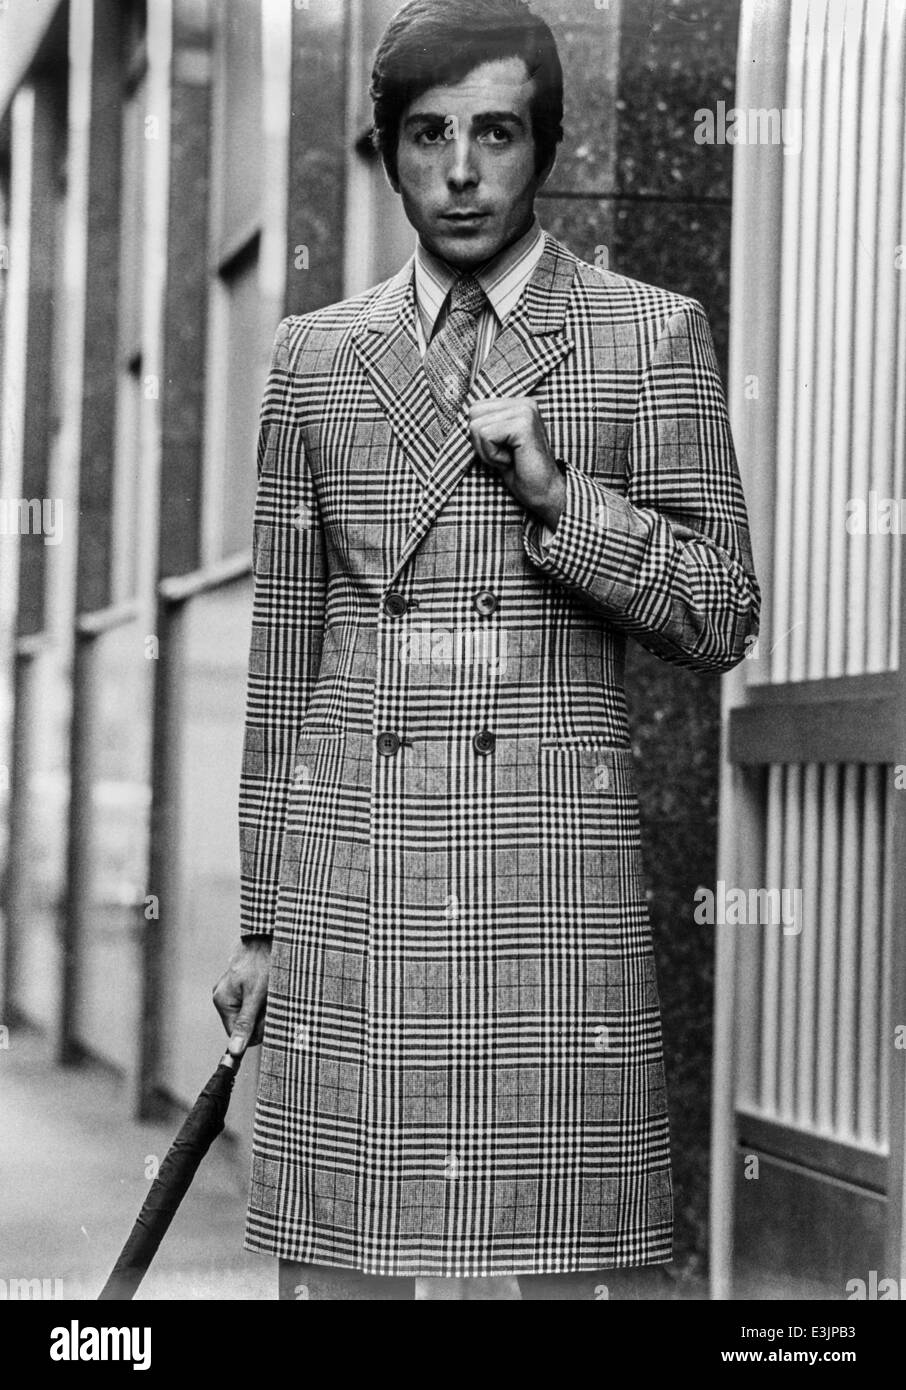 L'homme du style des années 1970,modèle pendant une séance photo Banque D'Images